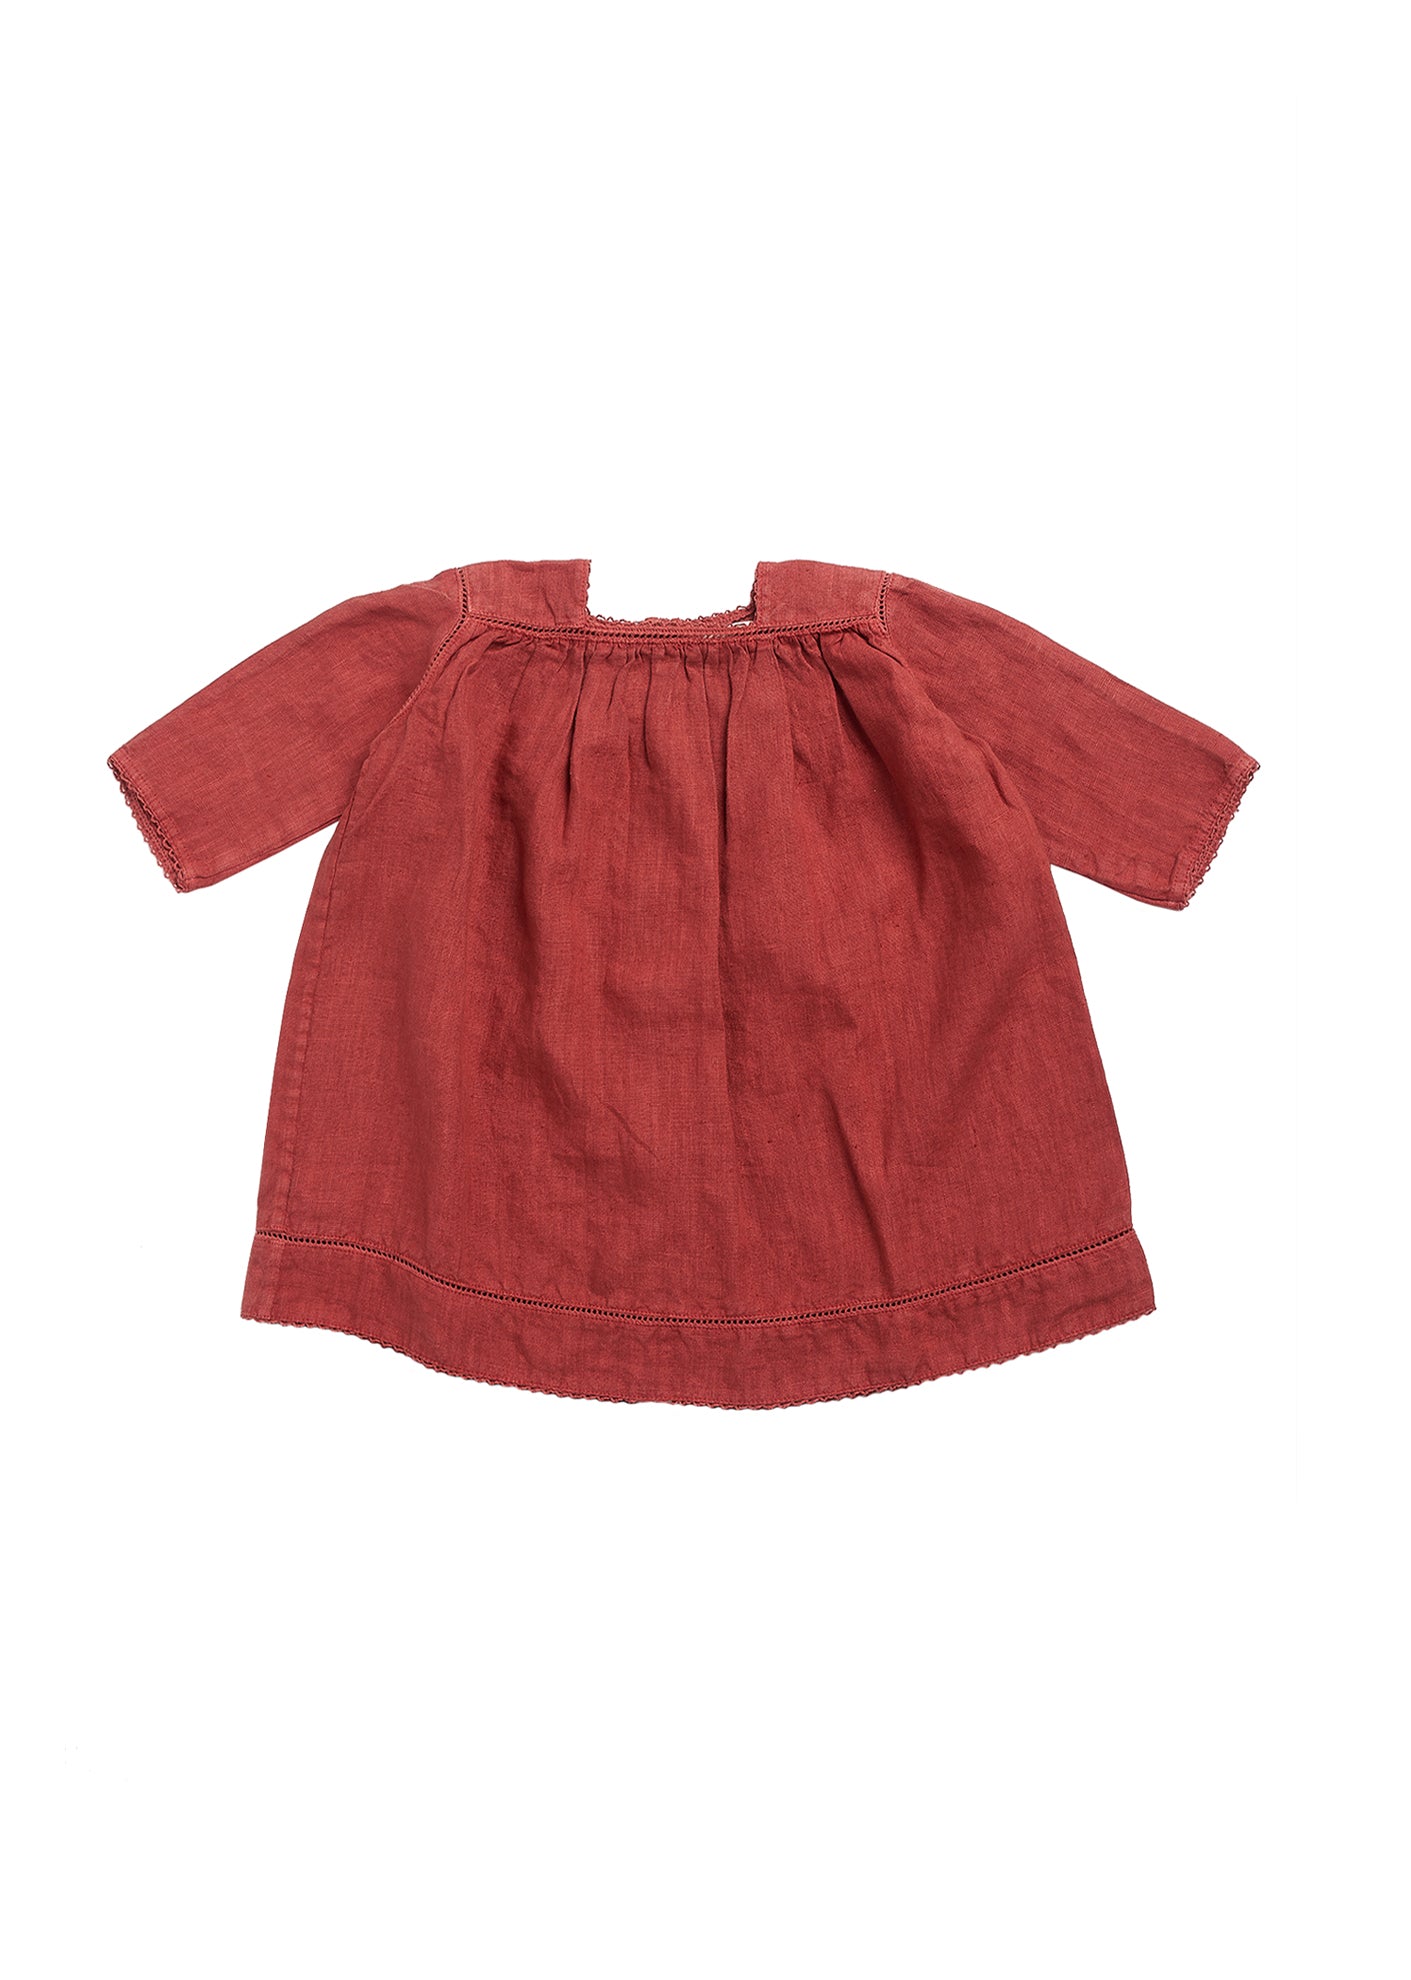 Baby Girls Paprika Red Dress